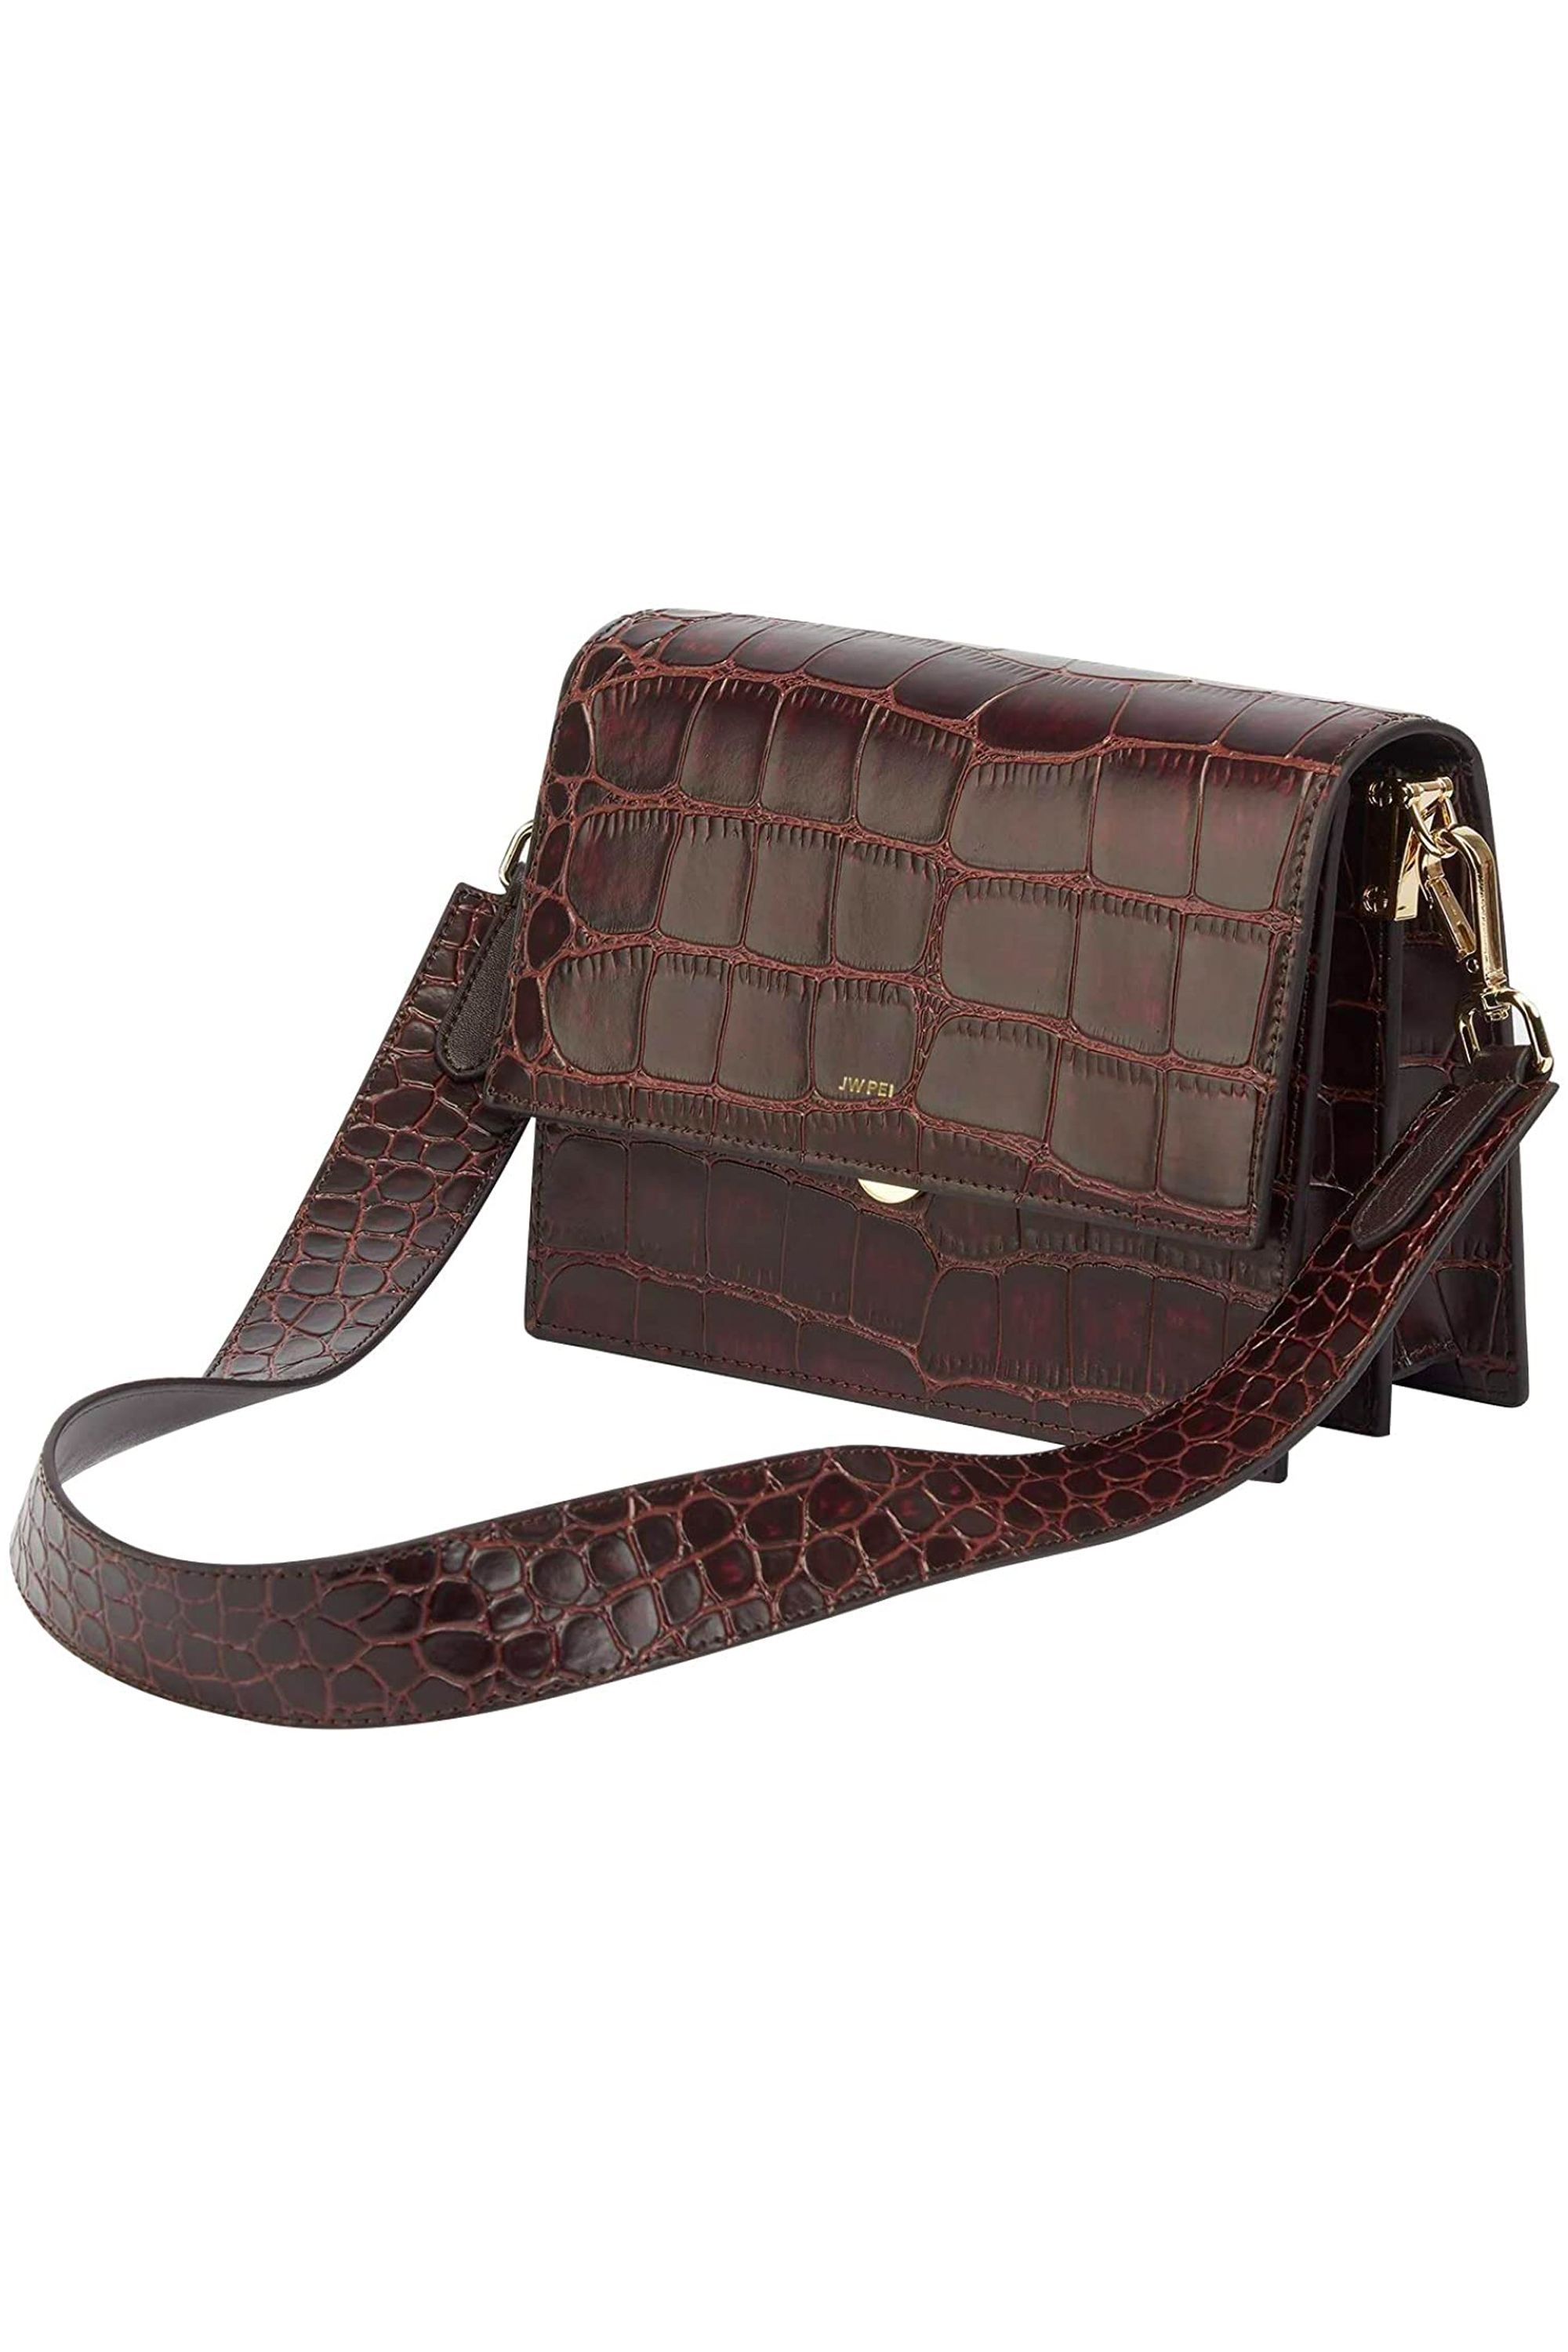 Womens Faux Leather Croc Print Messenger Shoulder Handbag Purse Ladies Bag 